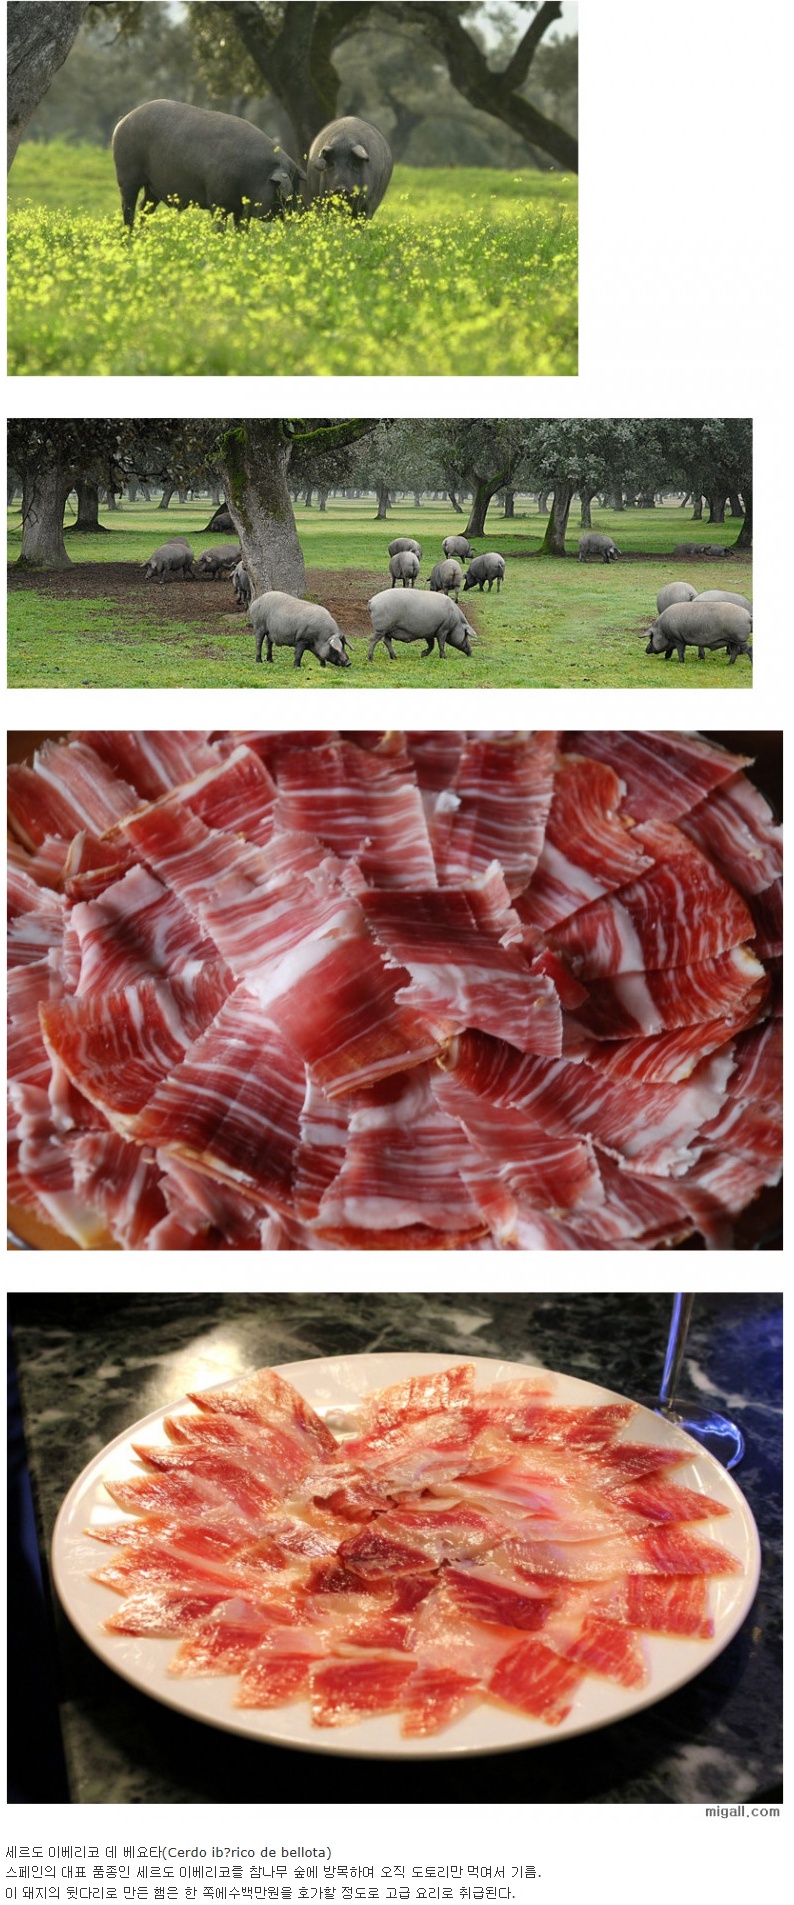 세계에서 가장 맛있는 돼지고기 .jpg.jpg